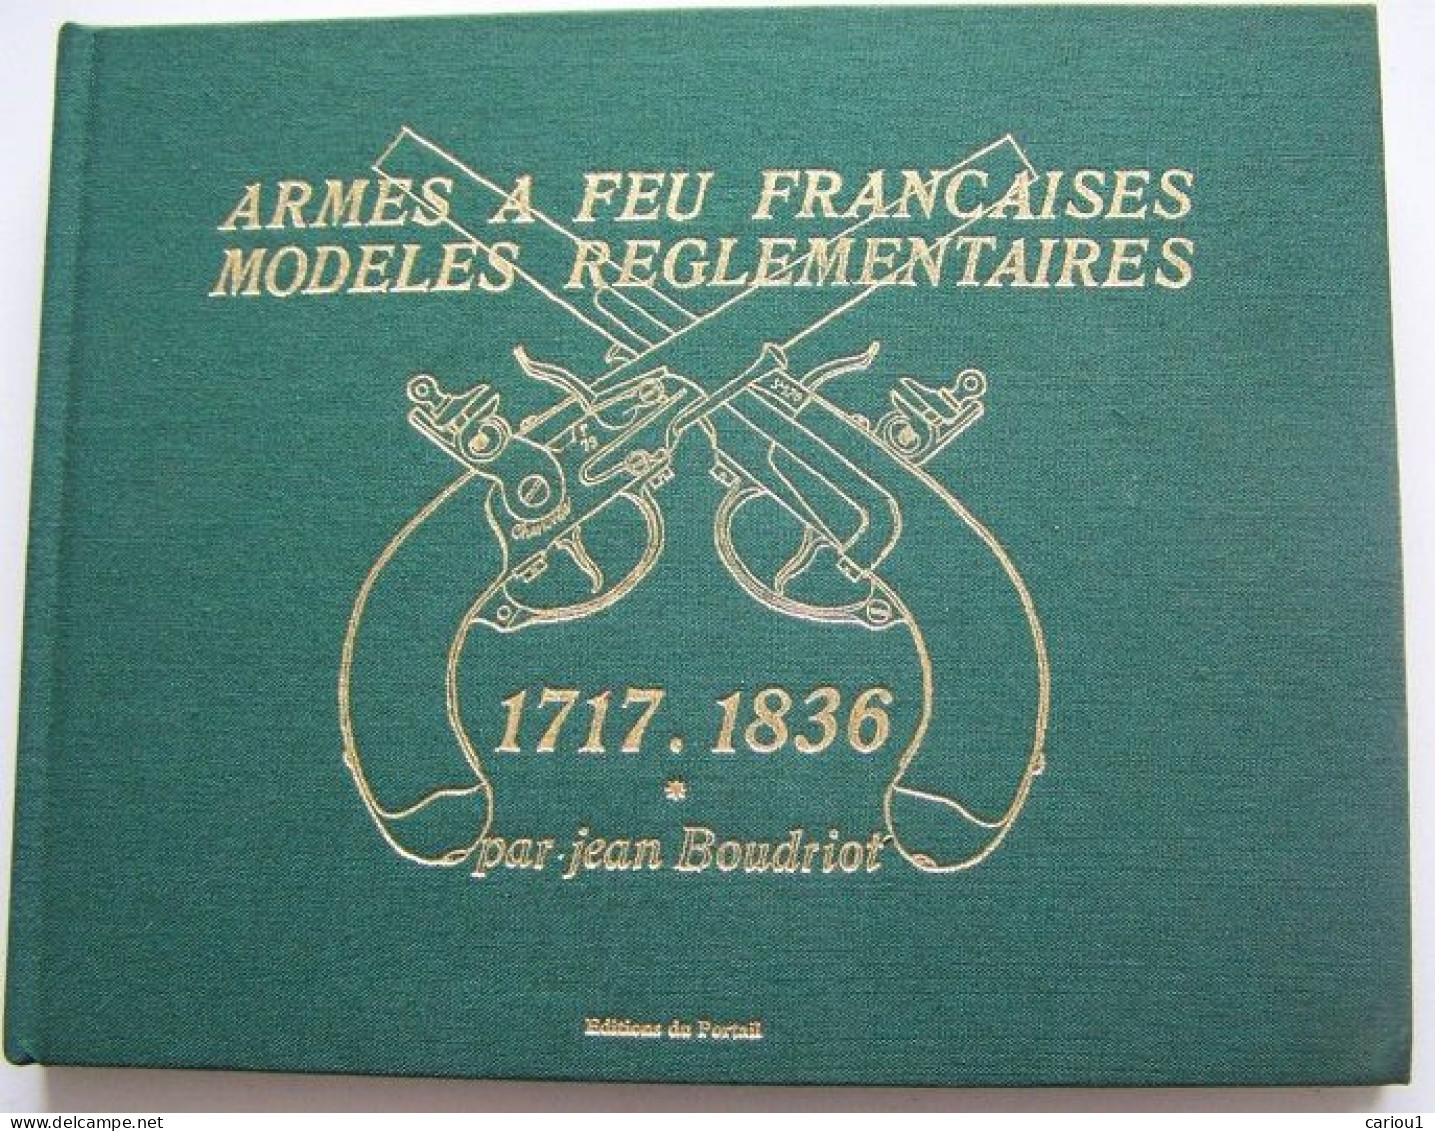 C1  Boudriot ARMES A FEU FRANCAISES 1717 1836 Tome 1 1997 Relie ILLUSTRE - Francese